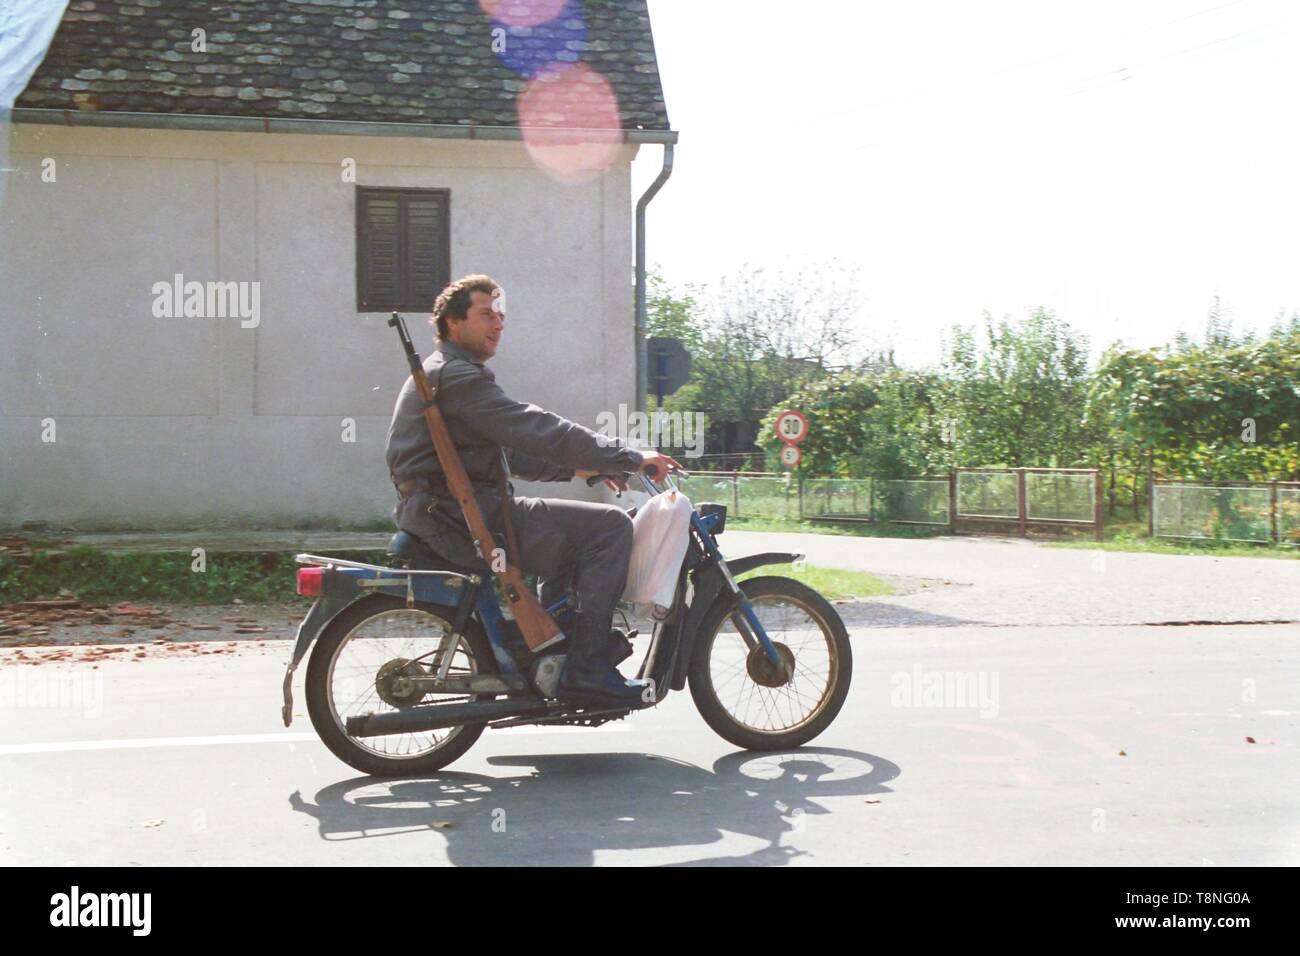 Un poliziotto croato, armati per la guerra i capi su un motociclo per il front-line nel villaggio di Moscenica durante la disgregazione della Jugoslavia nel 1991-1992. Foto di Adam Alexander Foto Stock